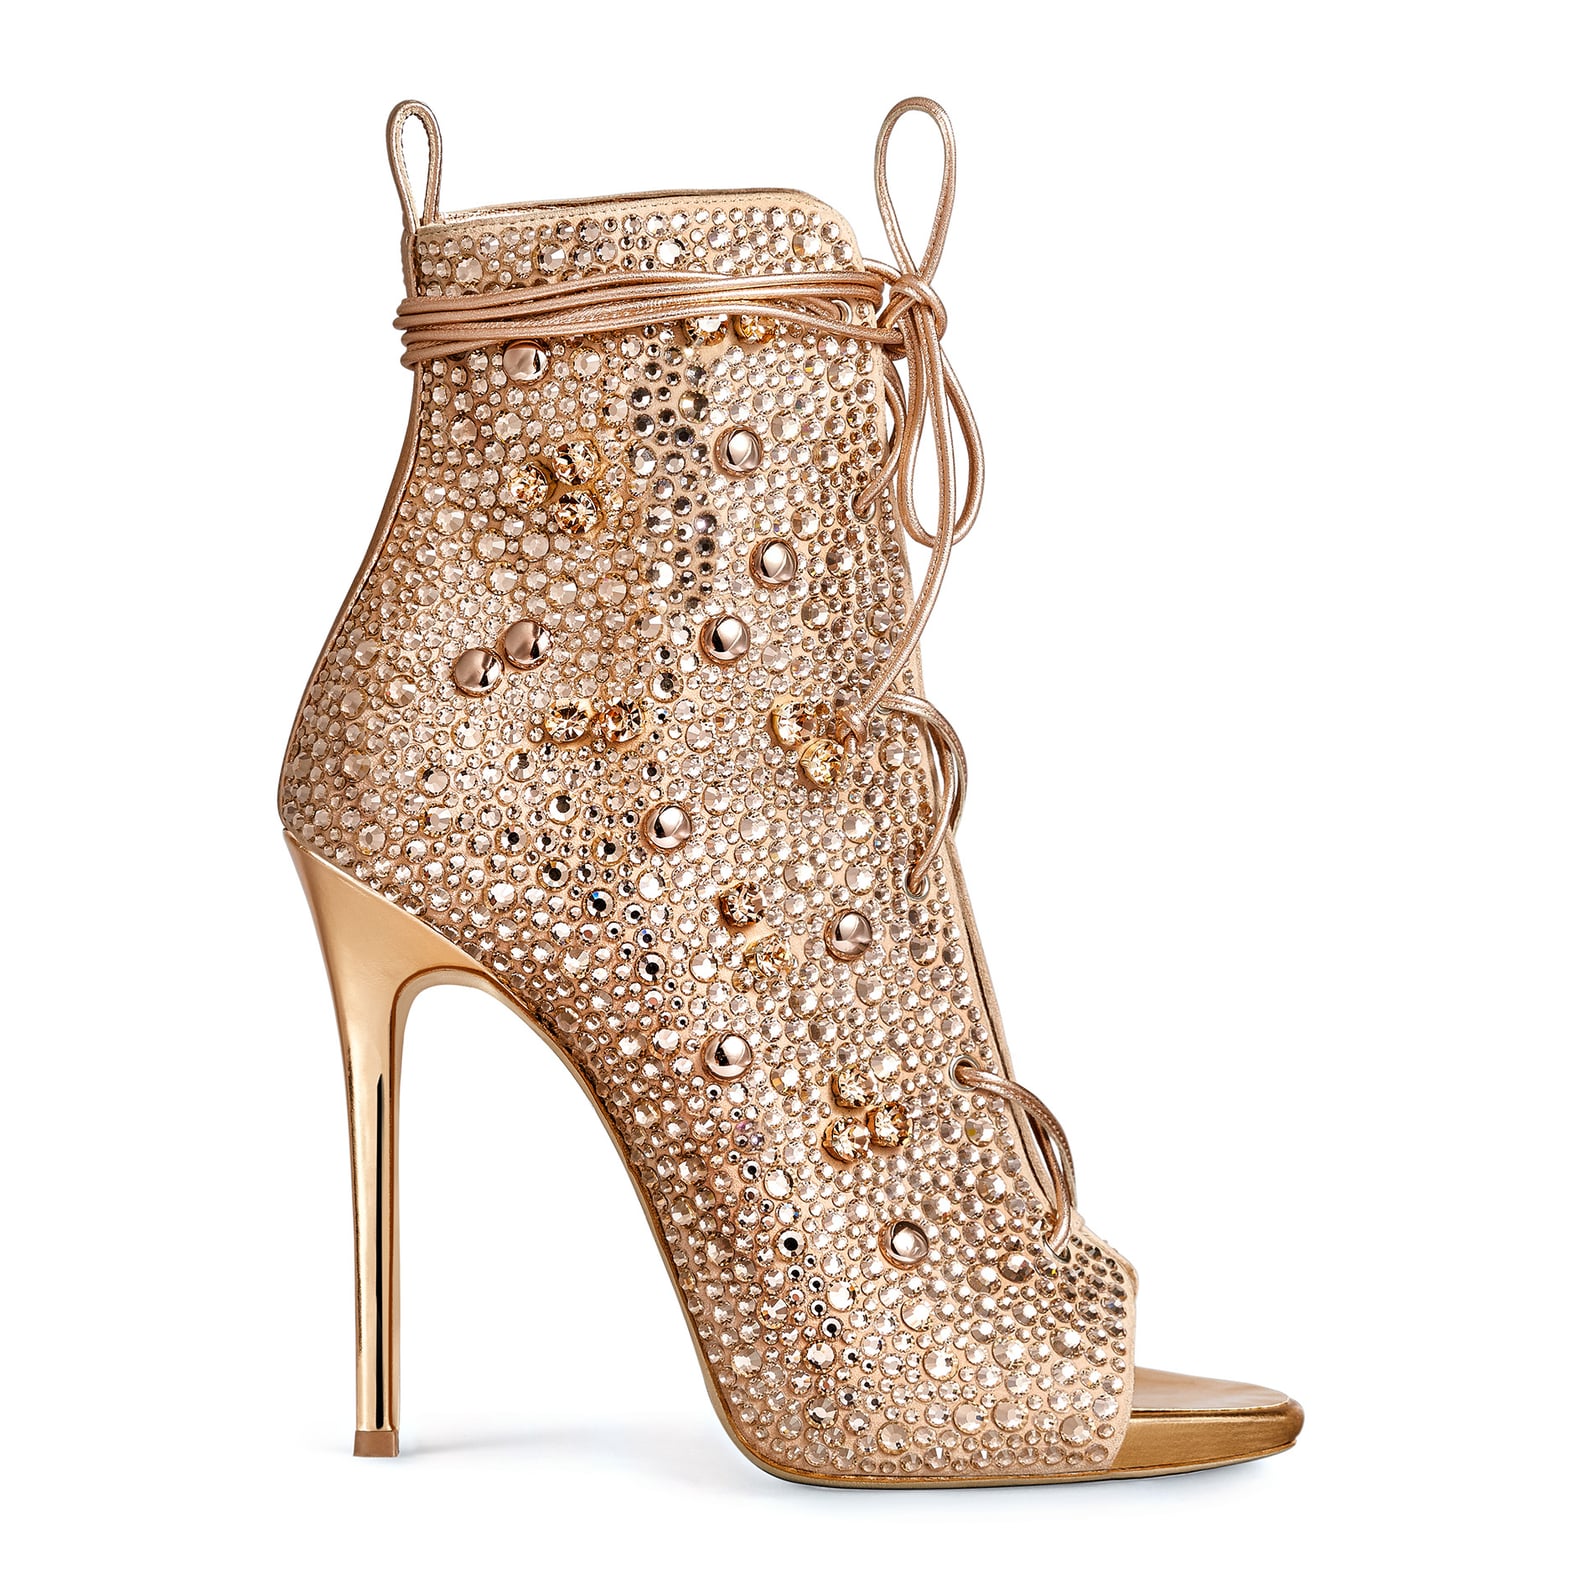 Jennifer Lopez Giuseppe Zanotti Shoe Collection | POPSUGAR Latina